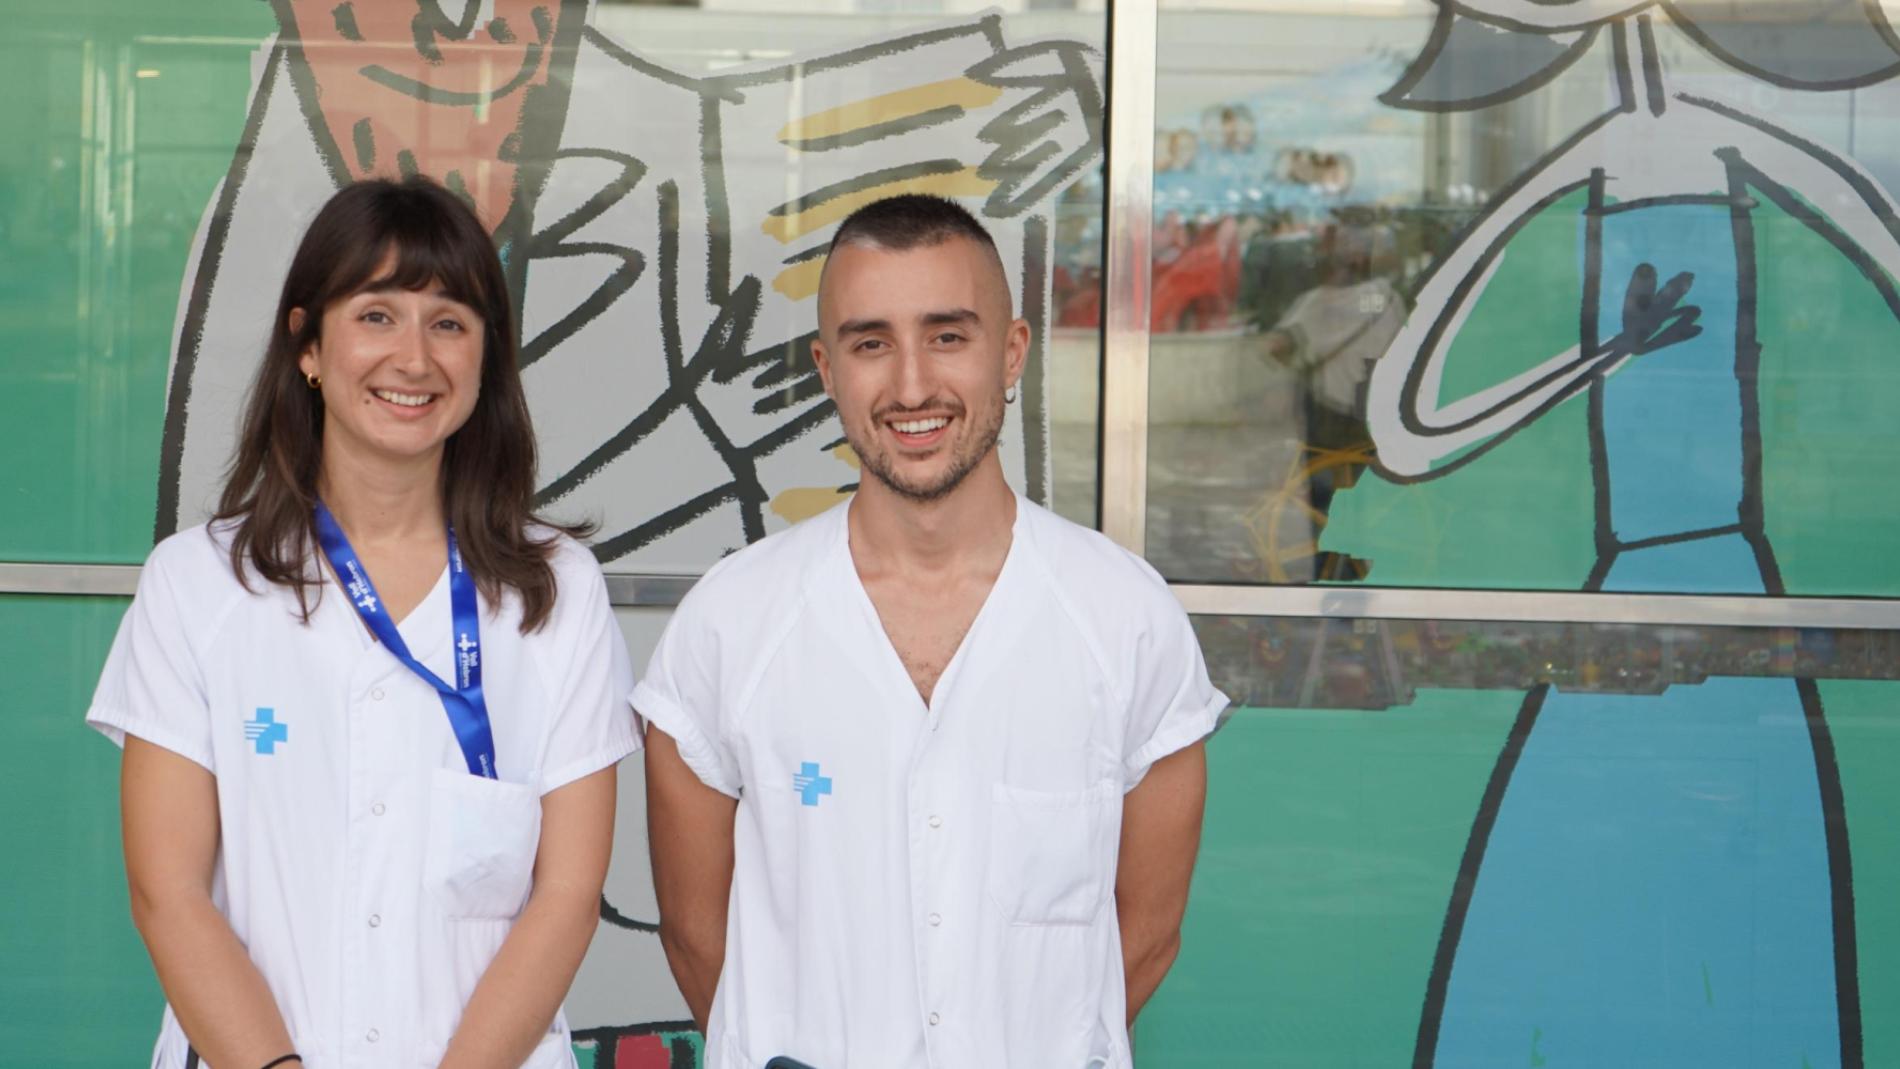 Dos de Vall d'Hebron financiadas por el colegio oficial de enfermeras y enfermeros de Barcelona | VHIR - Vall d'Hebron Institut Recerca